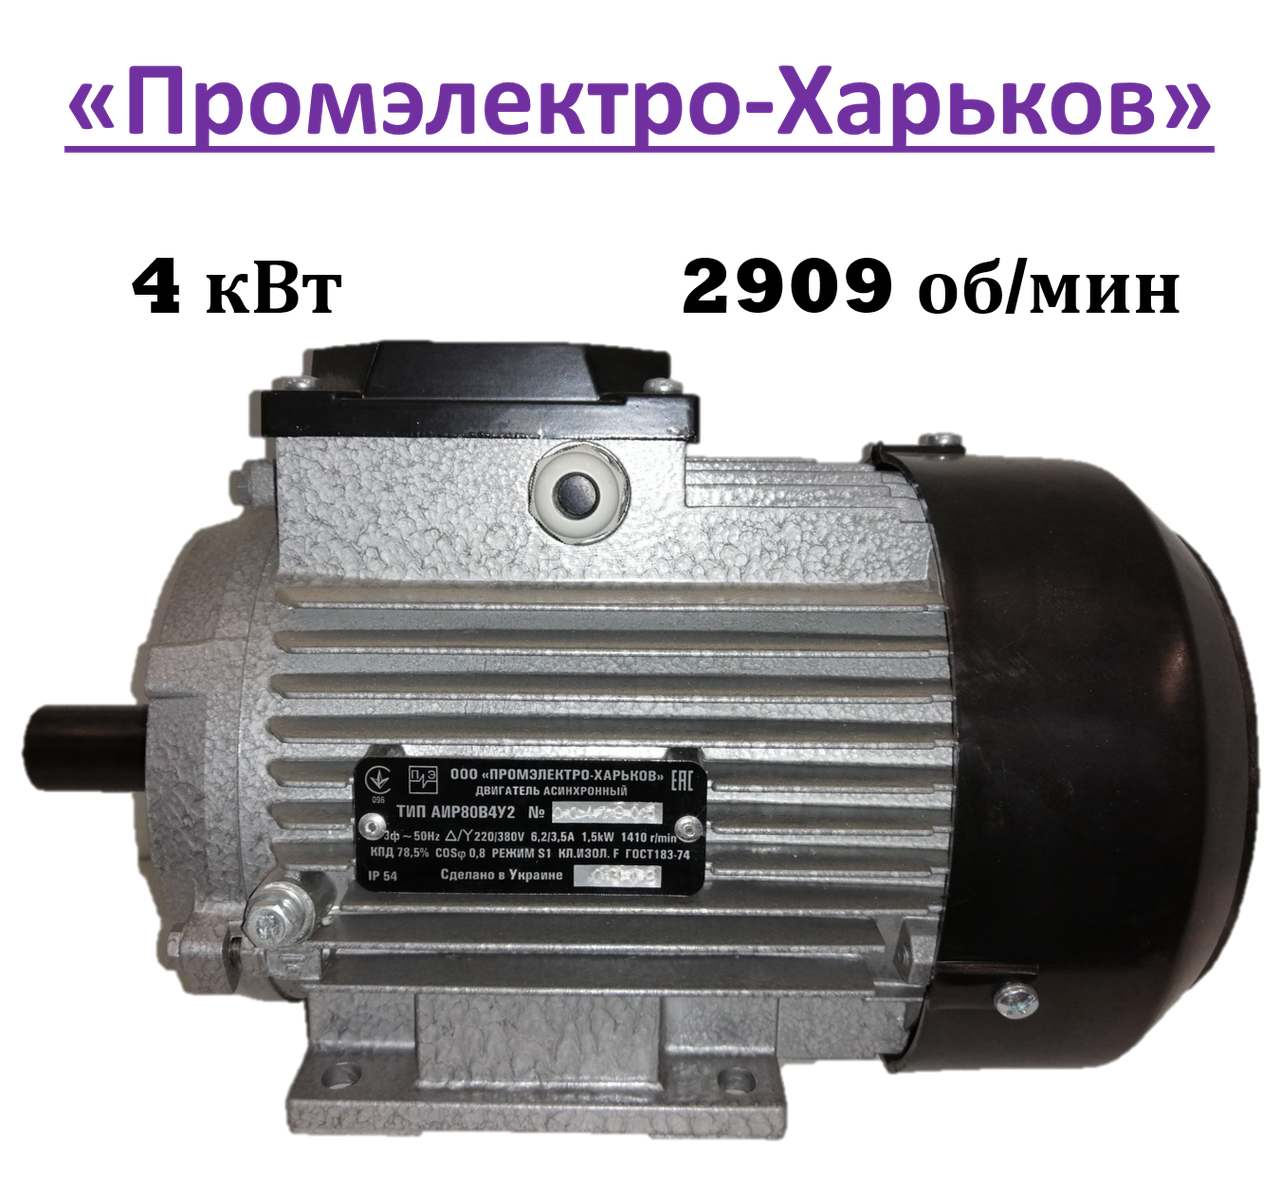 Електродвигун трифазний "Промелектро-Харків" АІР 100 S2 У2 (4 кВт, 2909 об/хв., 380 В, лапи)